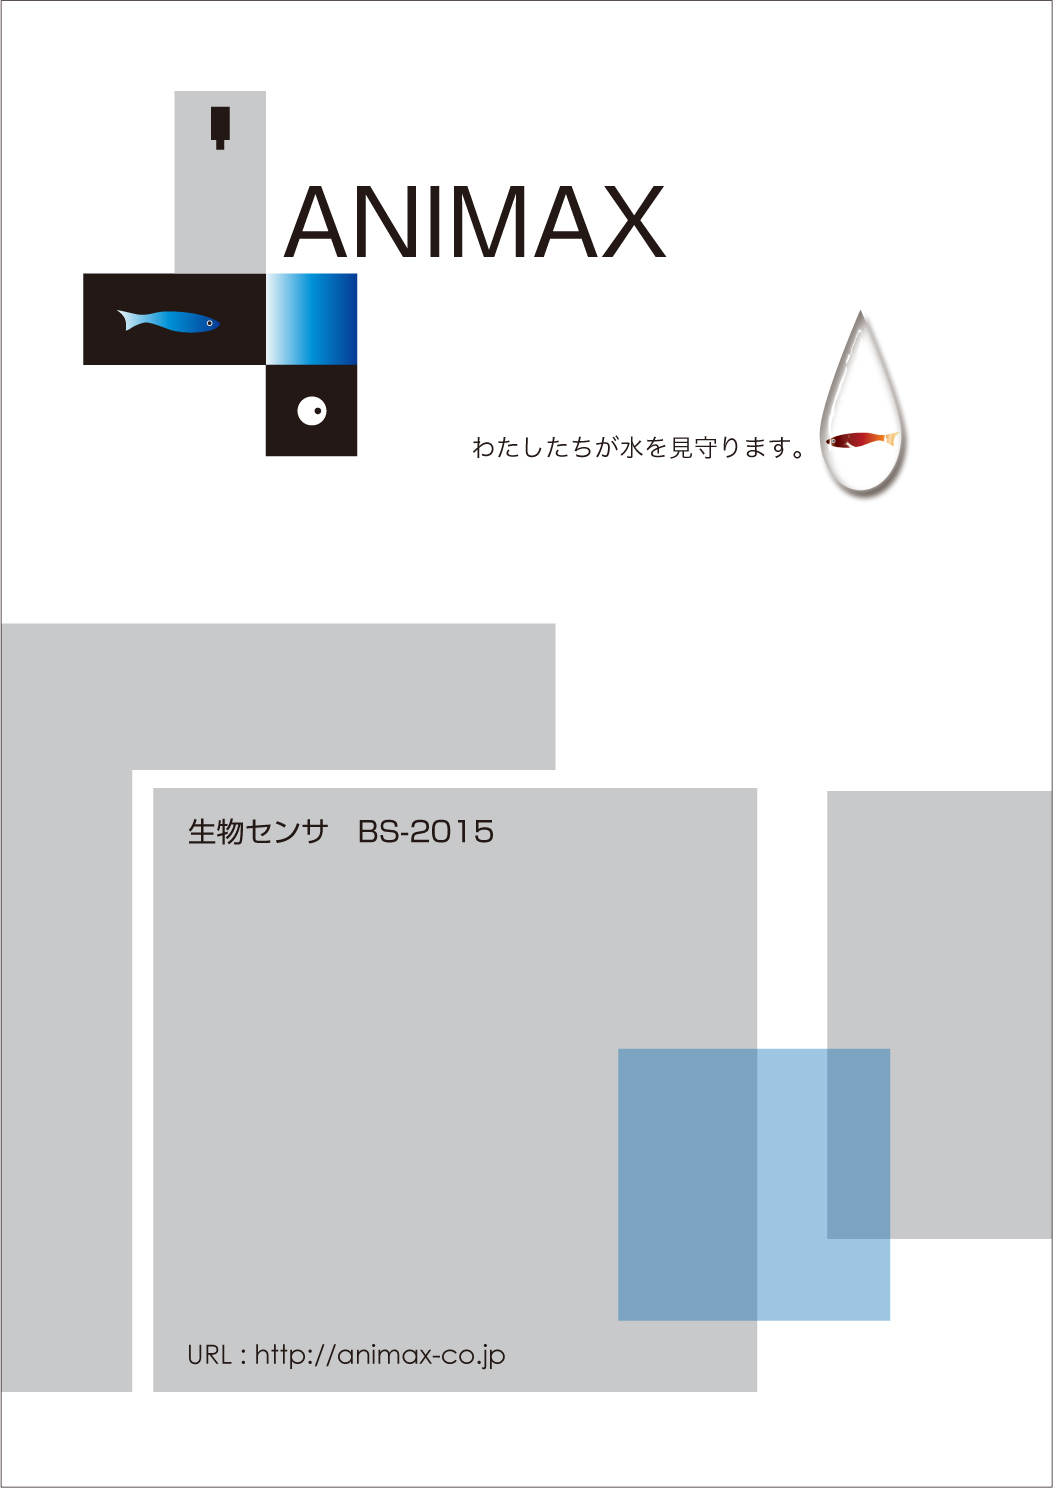 バイオアッセイ 生物センサーのパンフ作成 神戸市の企業